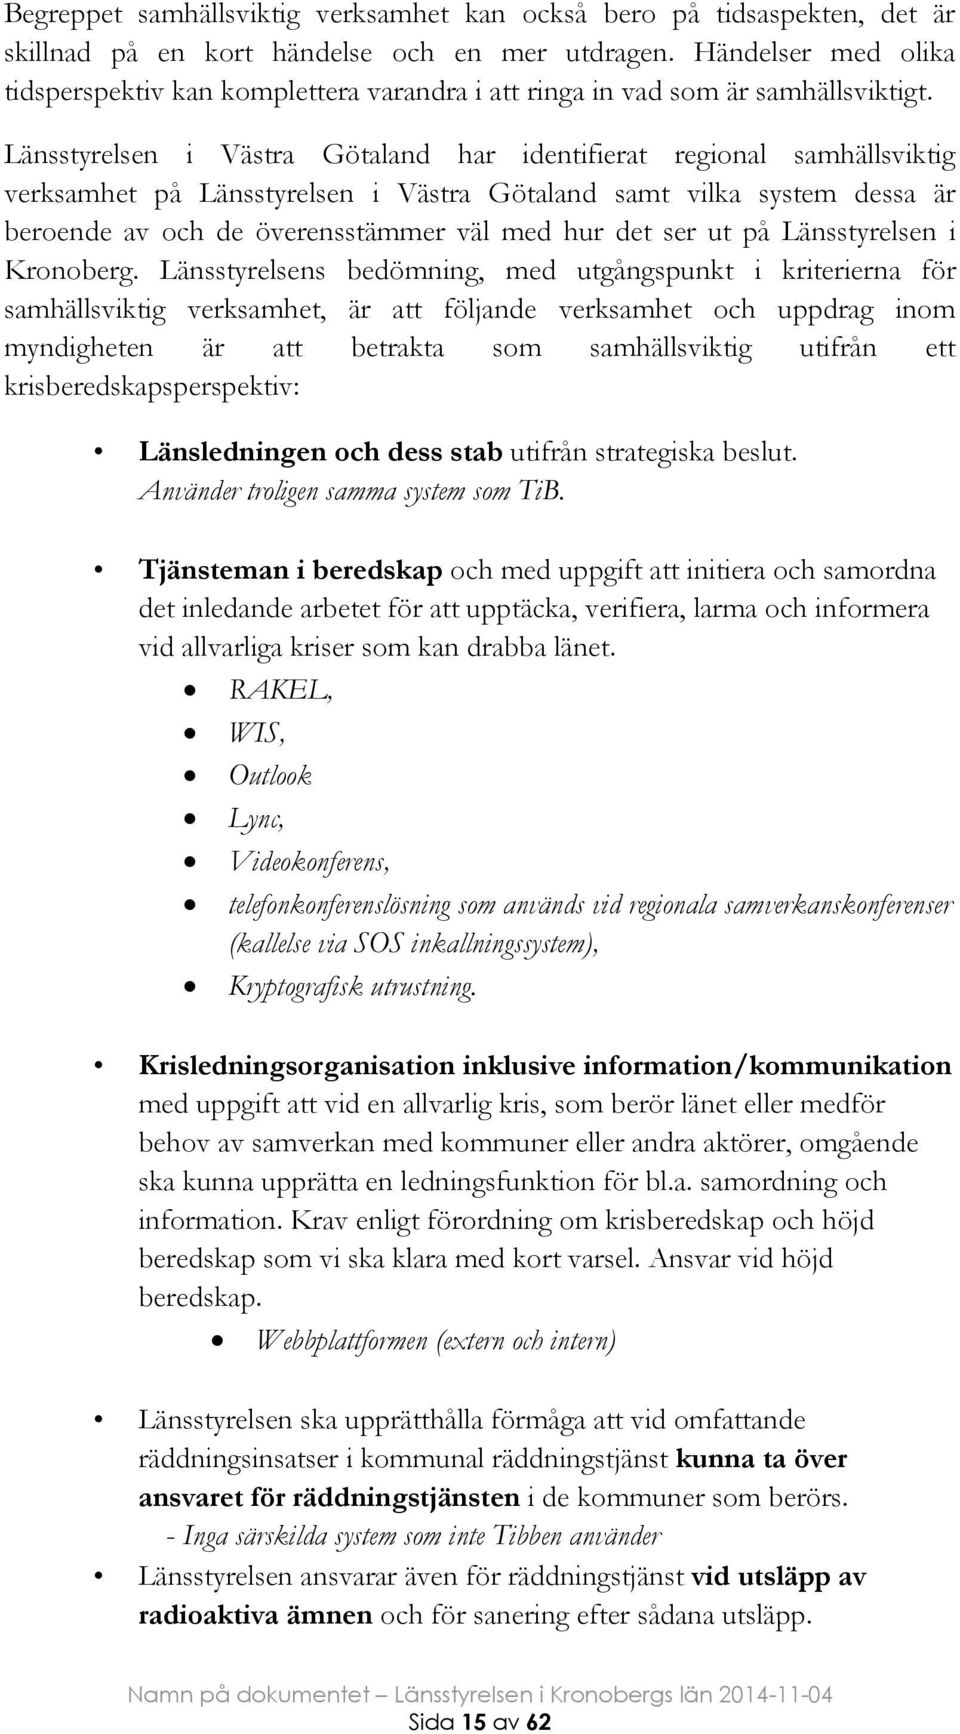 Länsstyrelsen i Västra Götaland har identifierat regional samhällsviktig verksamhet på Länsstyrelsen i Västra Götaland samt vilka system dessa är beroende av och de överensstämmer väl med hur det ser